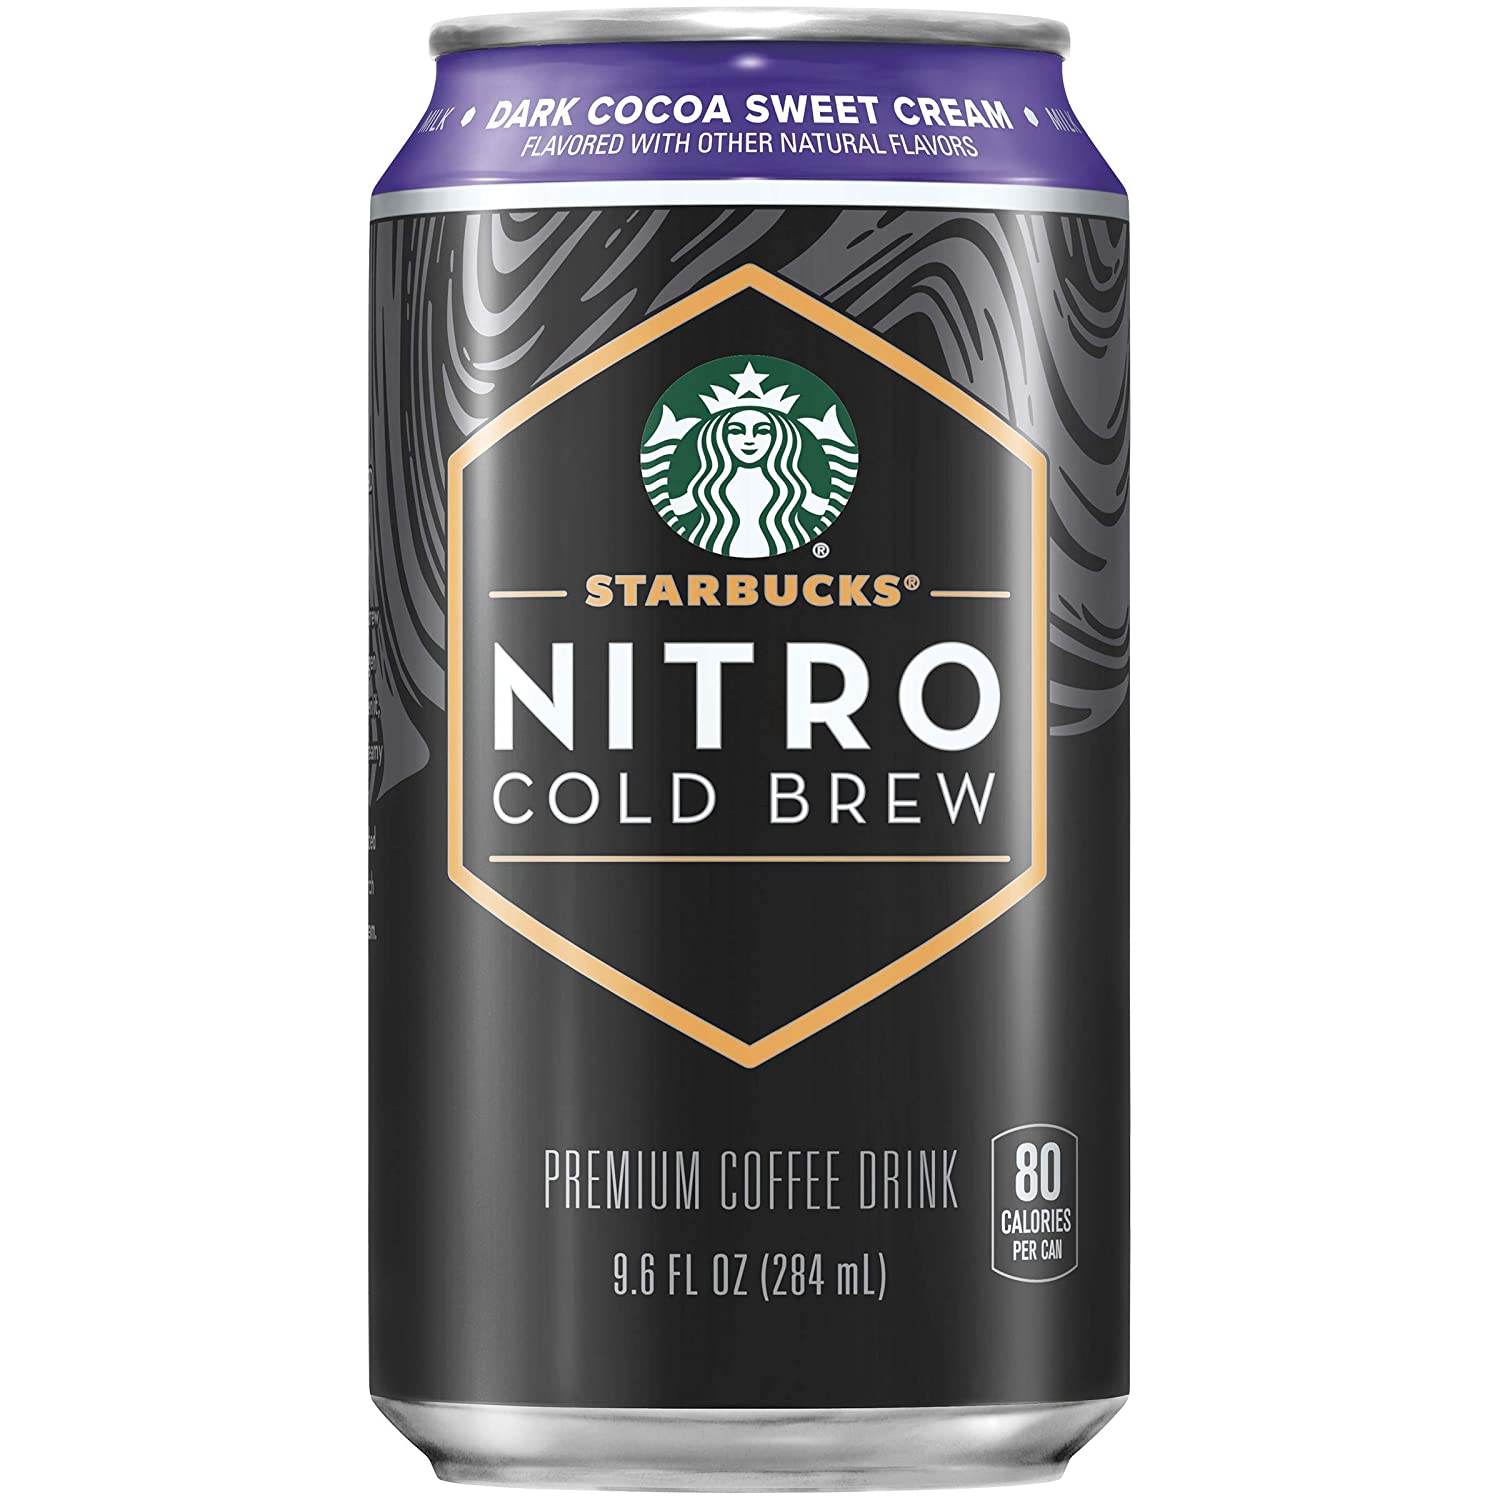 Starbucks Nitro Cold Brew, Dark Cocoa Sweet Cream, 9.6oz Can